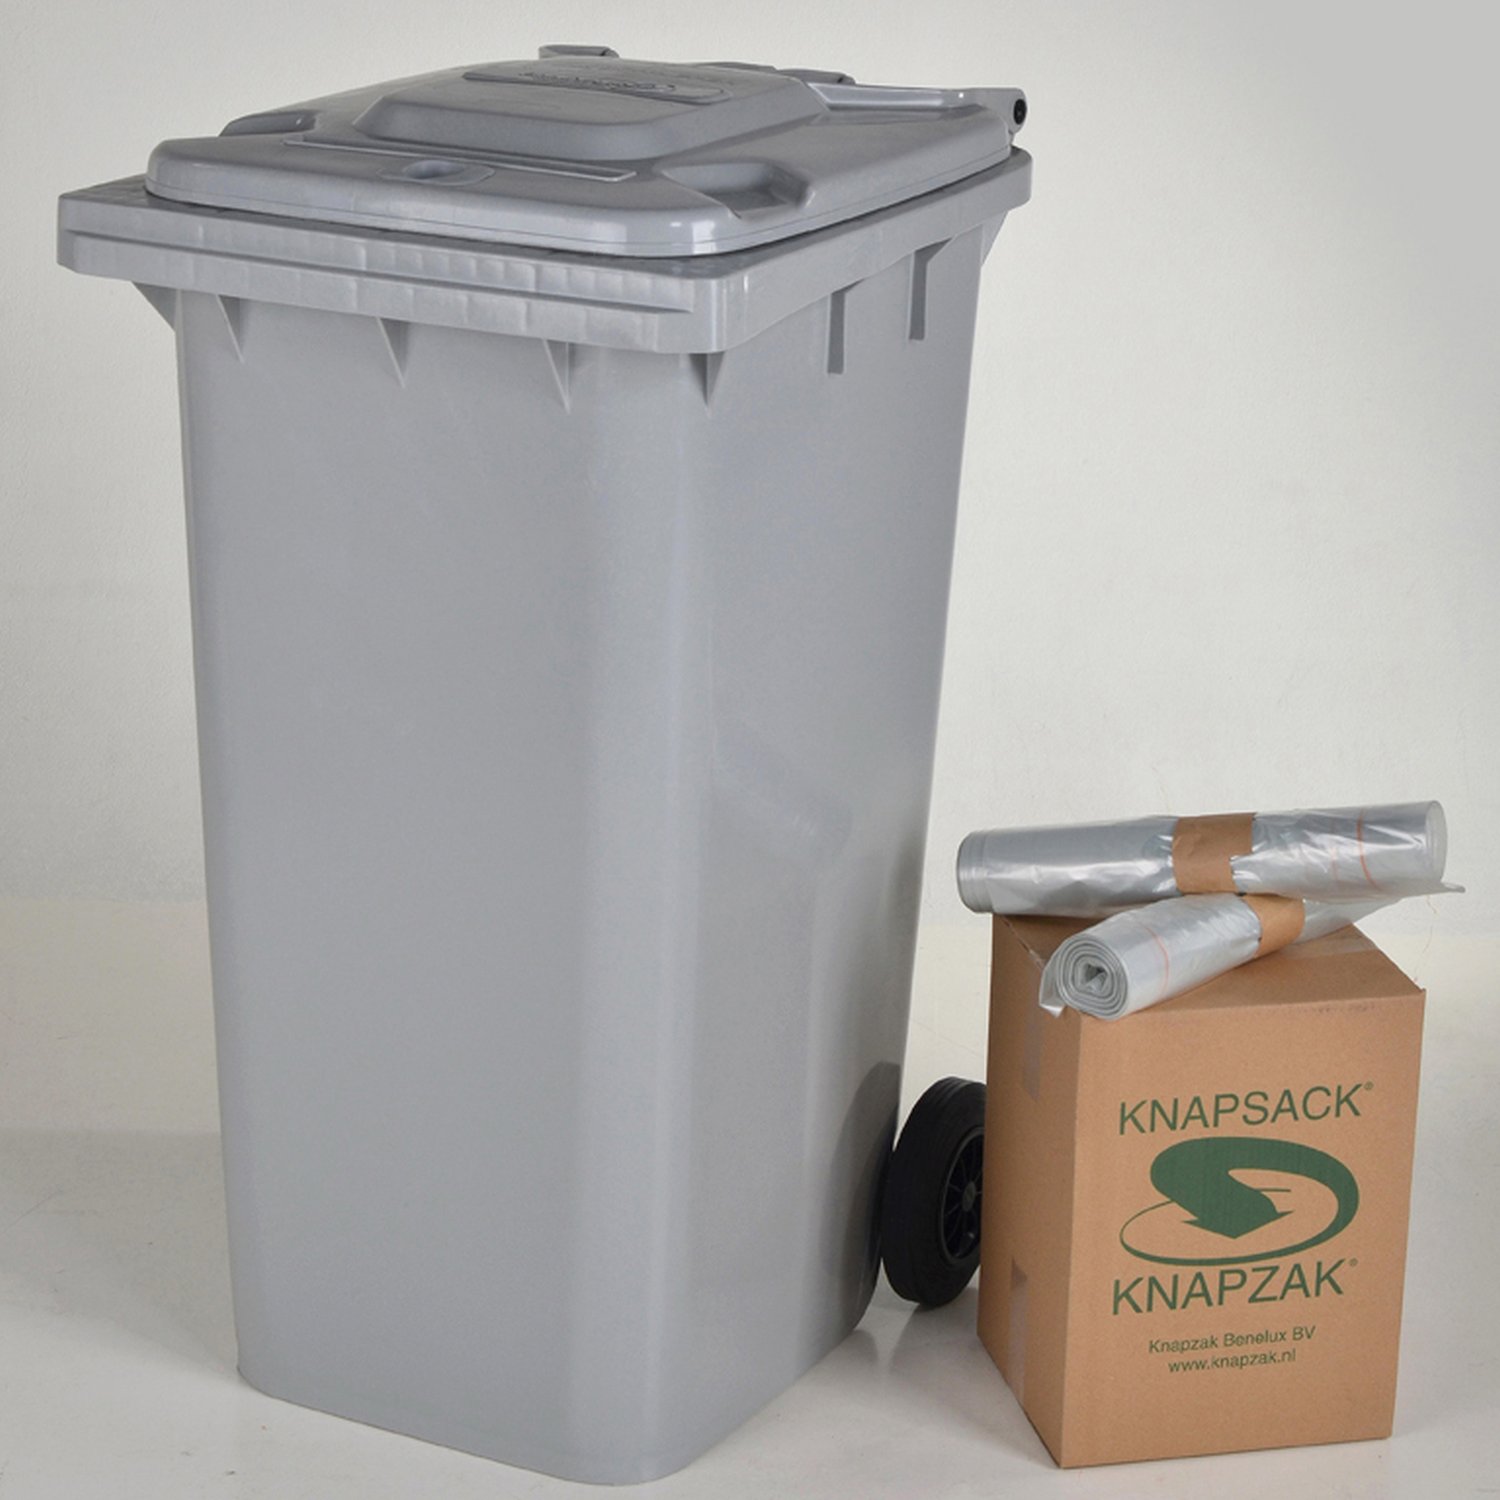 KCNP240-72 Housses conteneurs Garder votre conteneur propre avec nos housses conteneurs
Avec notre housse conteneur, vous pouvez collecter différentes sortes de déchets, les déchets résiduels, les emballages plastiques ou encore le papier. Ces housses sont disponibles en litrage de 140 litres jusqu’à 1100 litres. Une autre qualité de ces housses conteneurs est qu’elle laisse votre conteneur propre et qu’elle limite les nuisances olfactives.